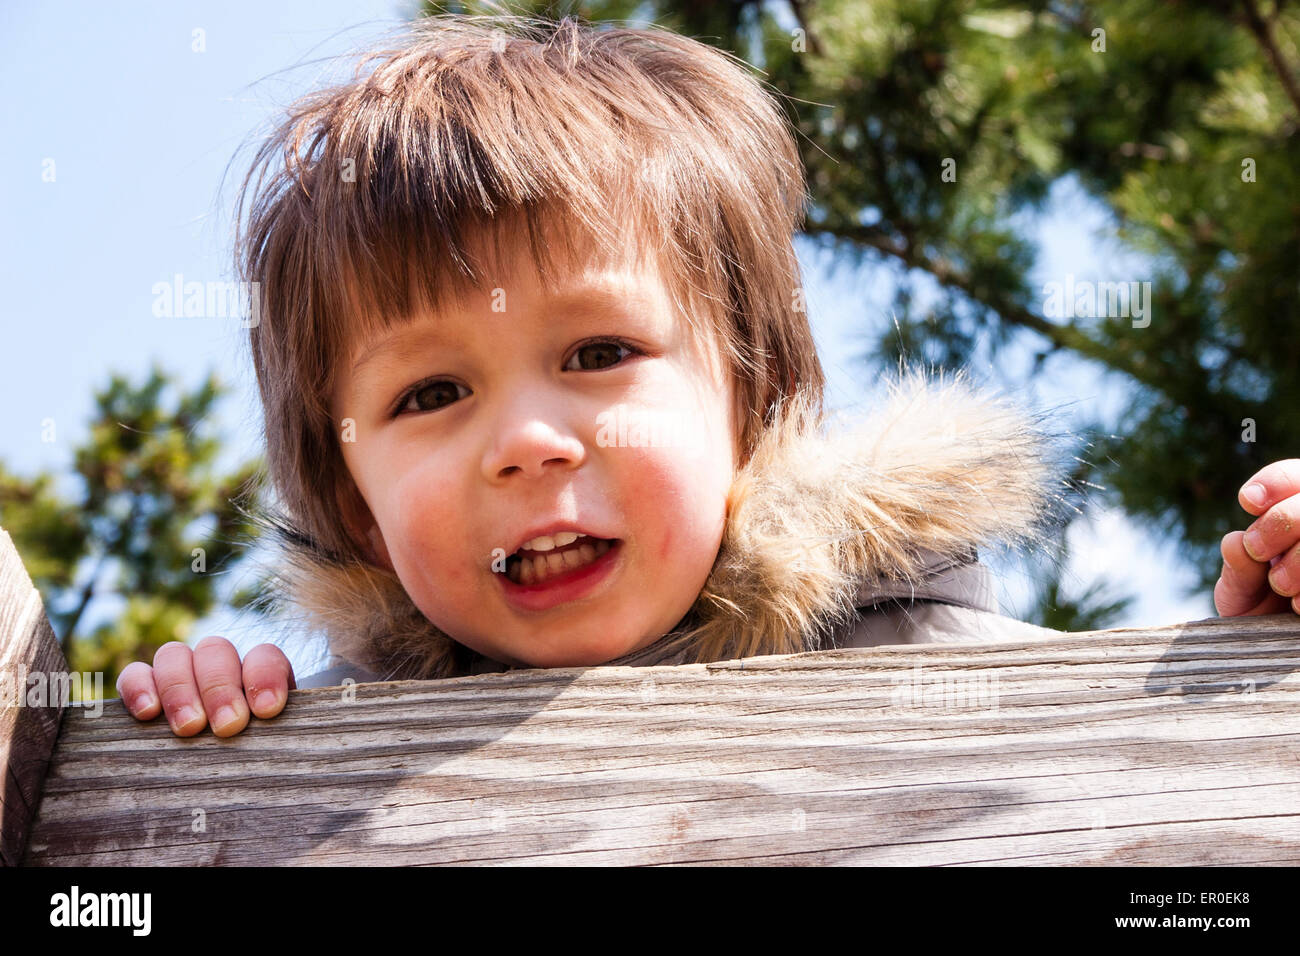 Une photo de tête et d'épaule d'un jeune enfant de 3-4 ans, avec des joues rouges, portant un manteau d'hiver avec un col en fourrure, regarde une clôture en bois au spectateur. Banque D'Images